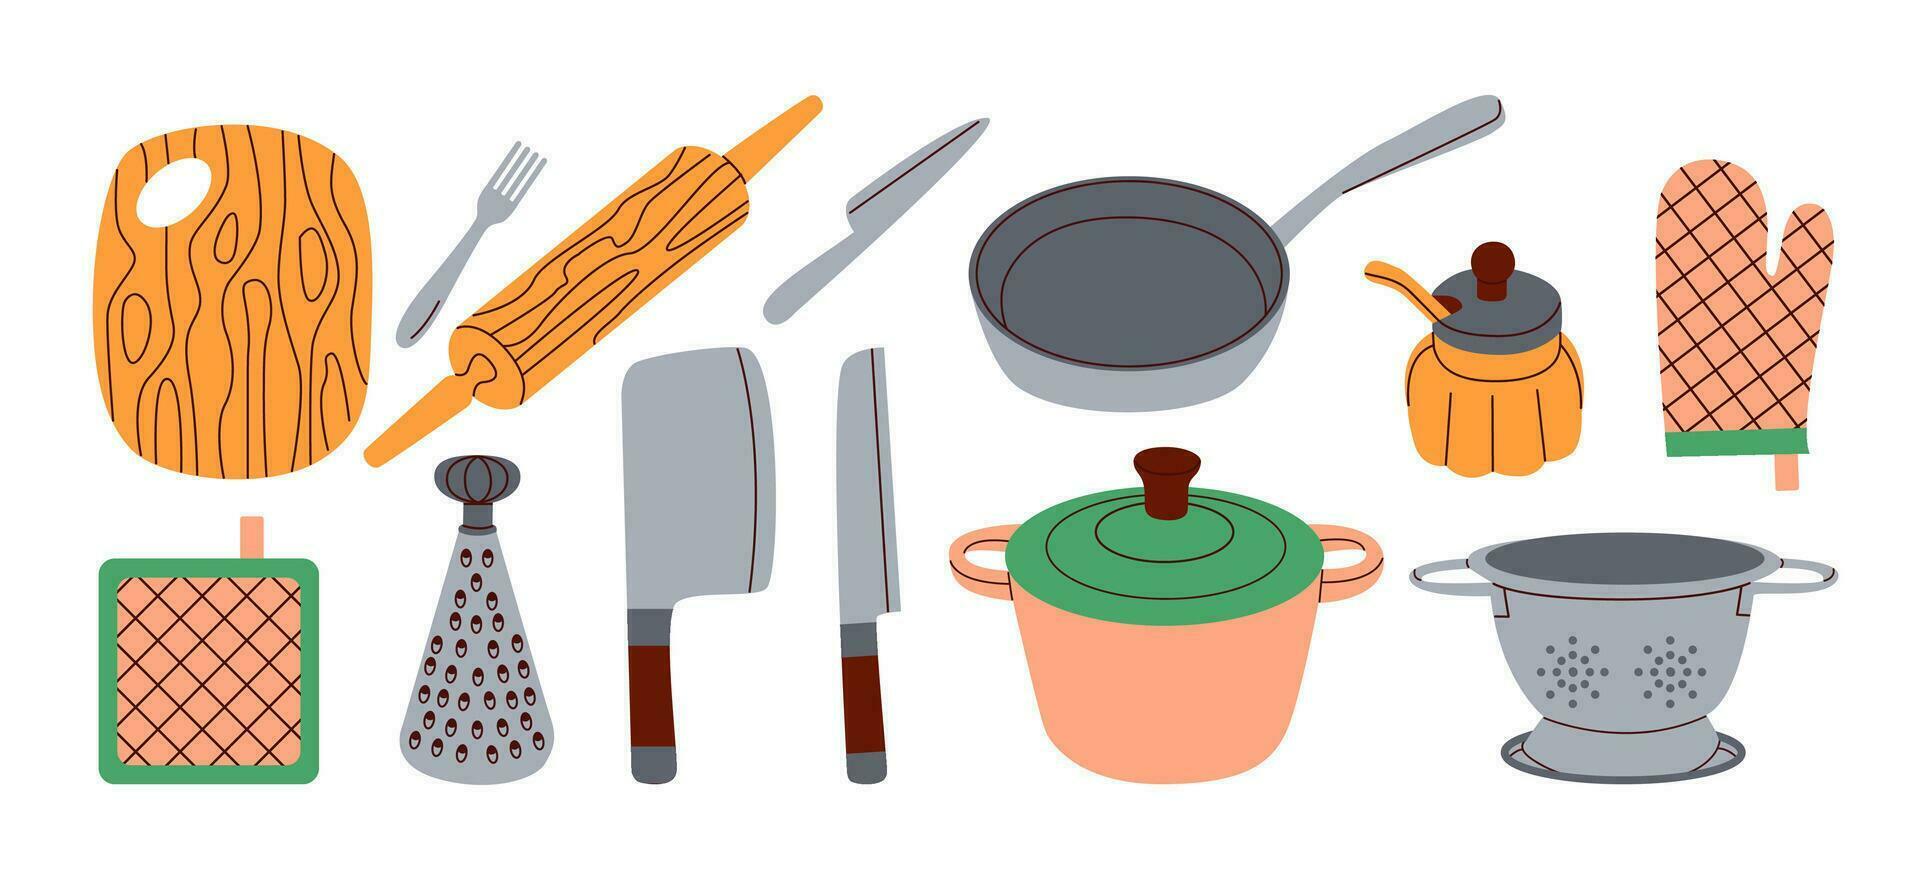 Küche Utensilien Satz. Geschirr, Kochen Werkzeug. eben Vektor Illustration auf Weiß Hintergrund.